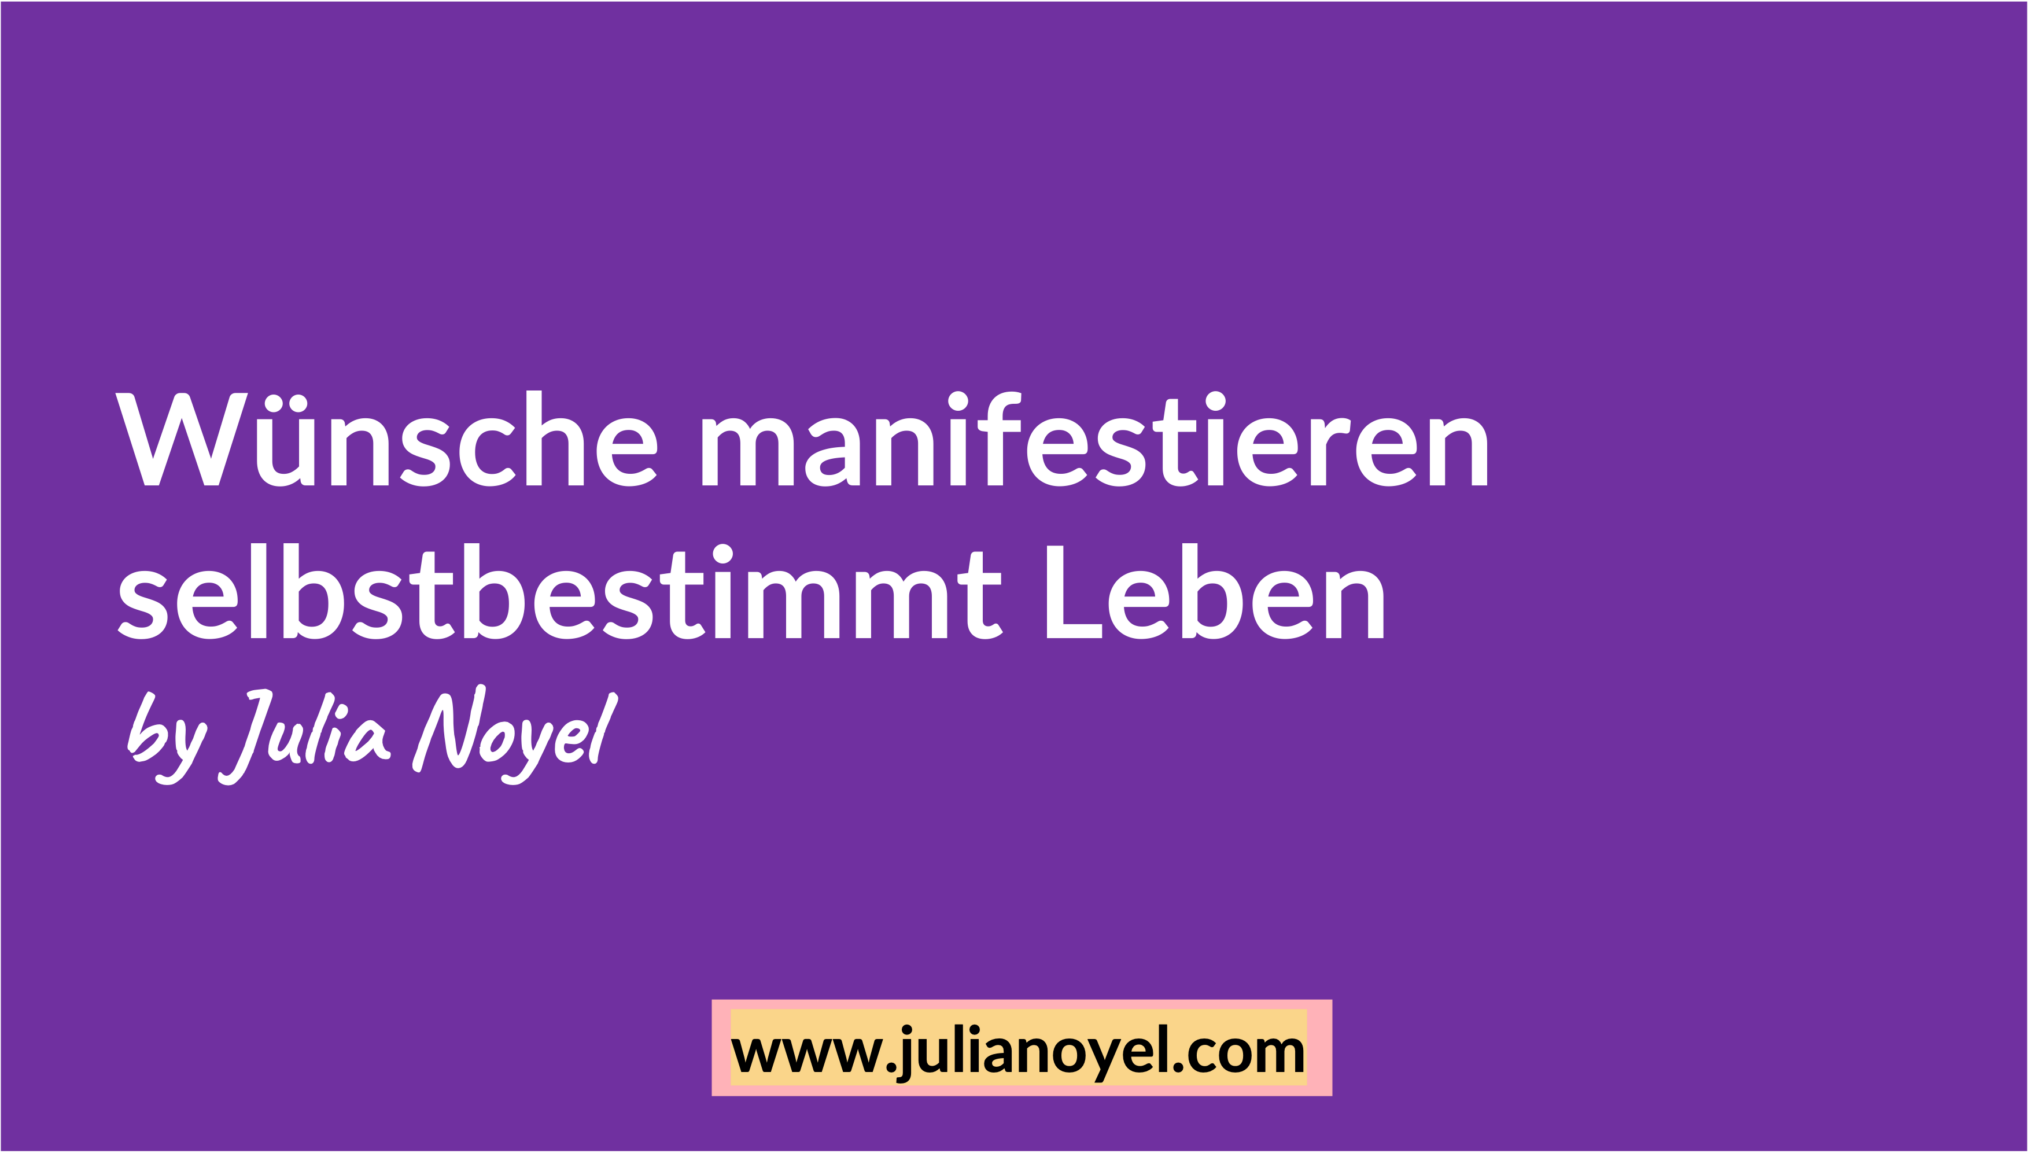 Wünsche manifestieren selbstbestimmt Leben by Julia Noyel